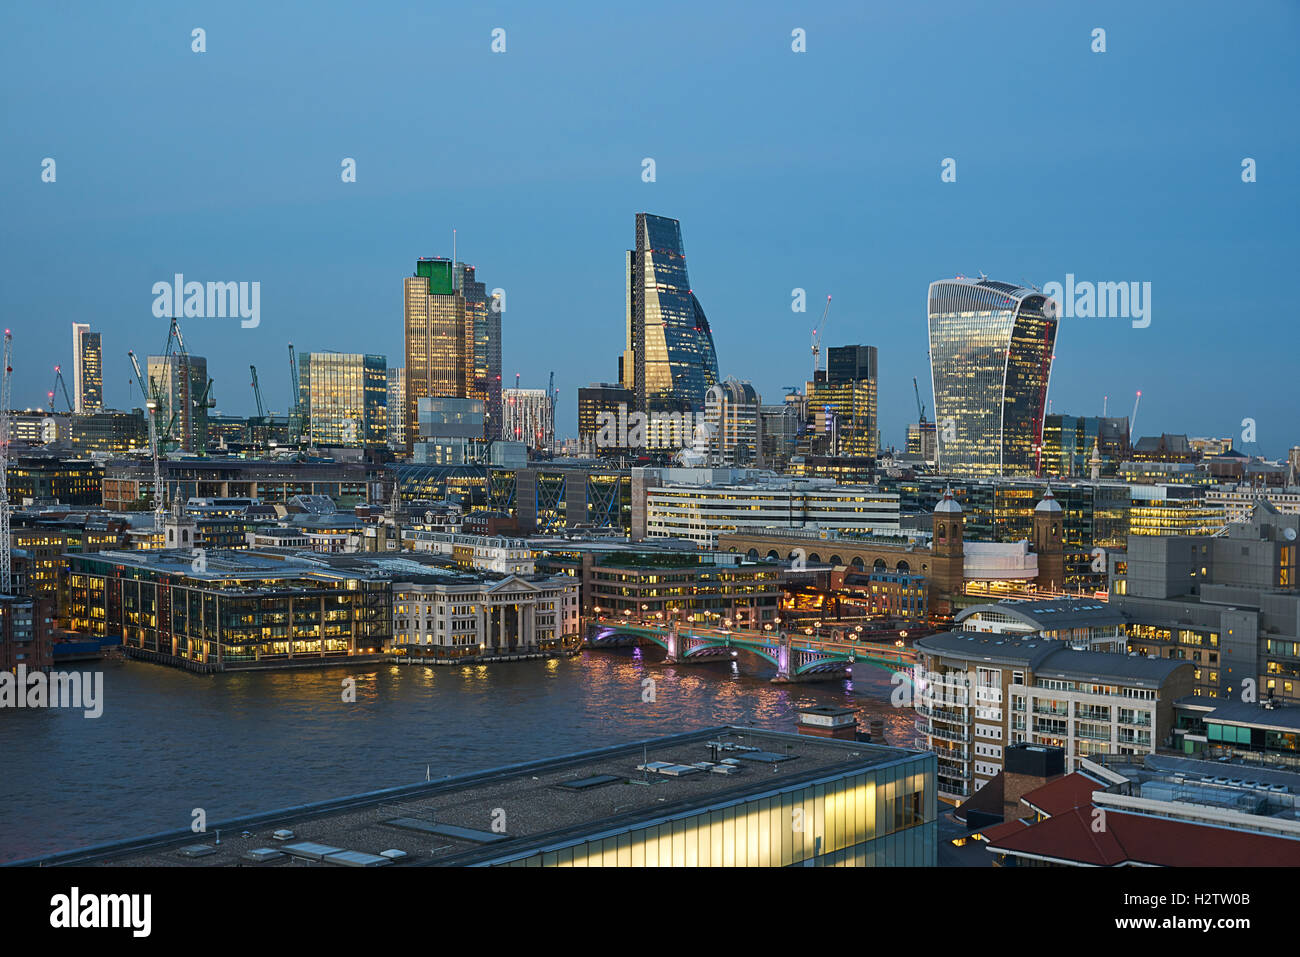 El horizonte de la ciudad de Londres. El distrito financiero. Londres de noche. Edificios altos rascacielos. Foto de stock